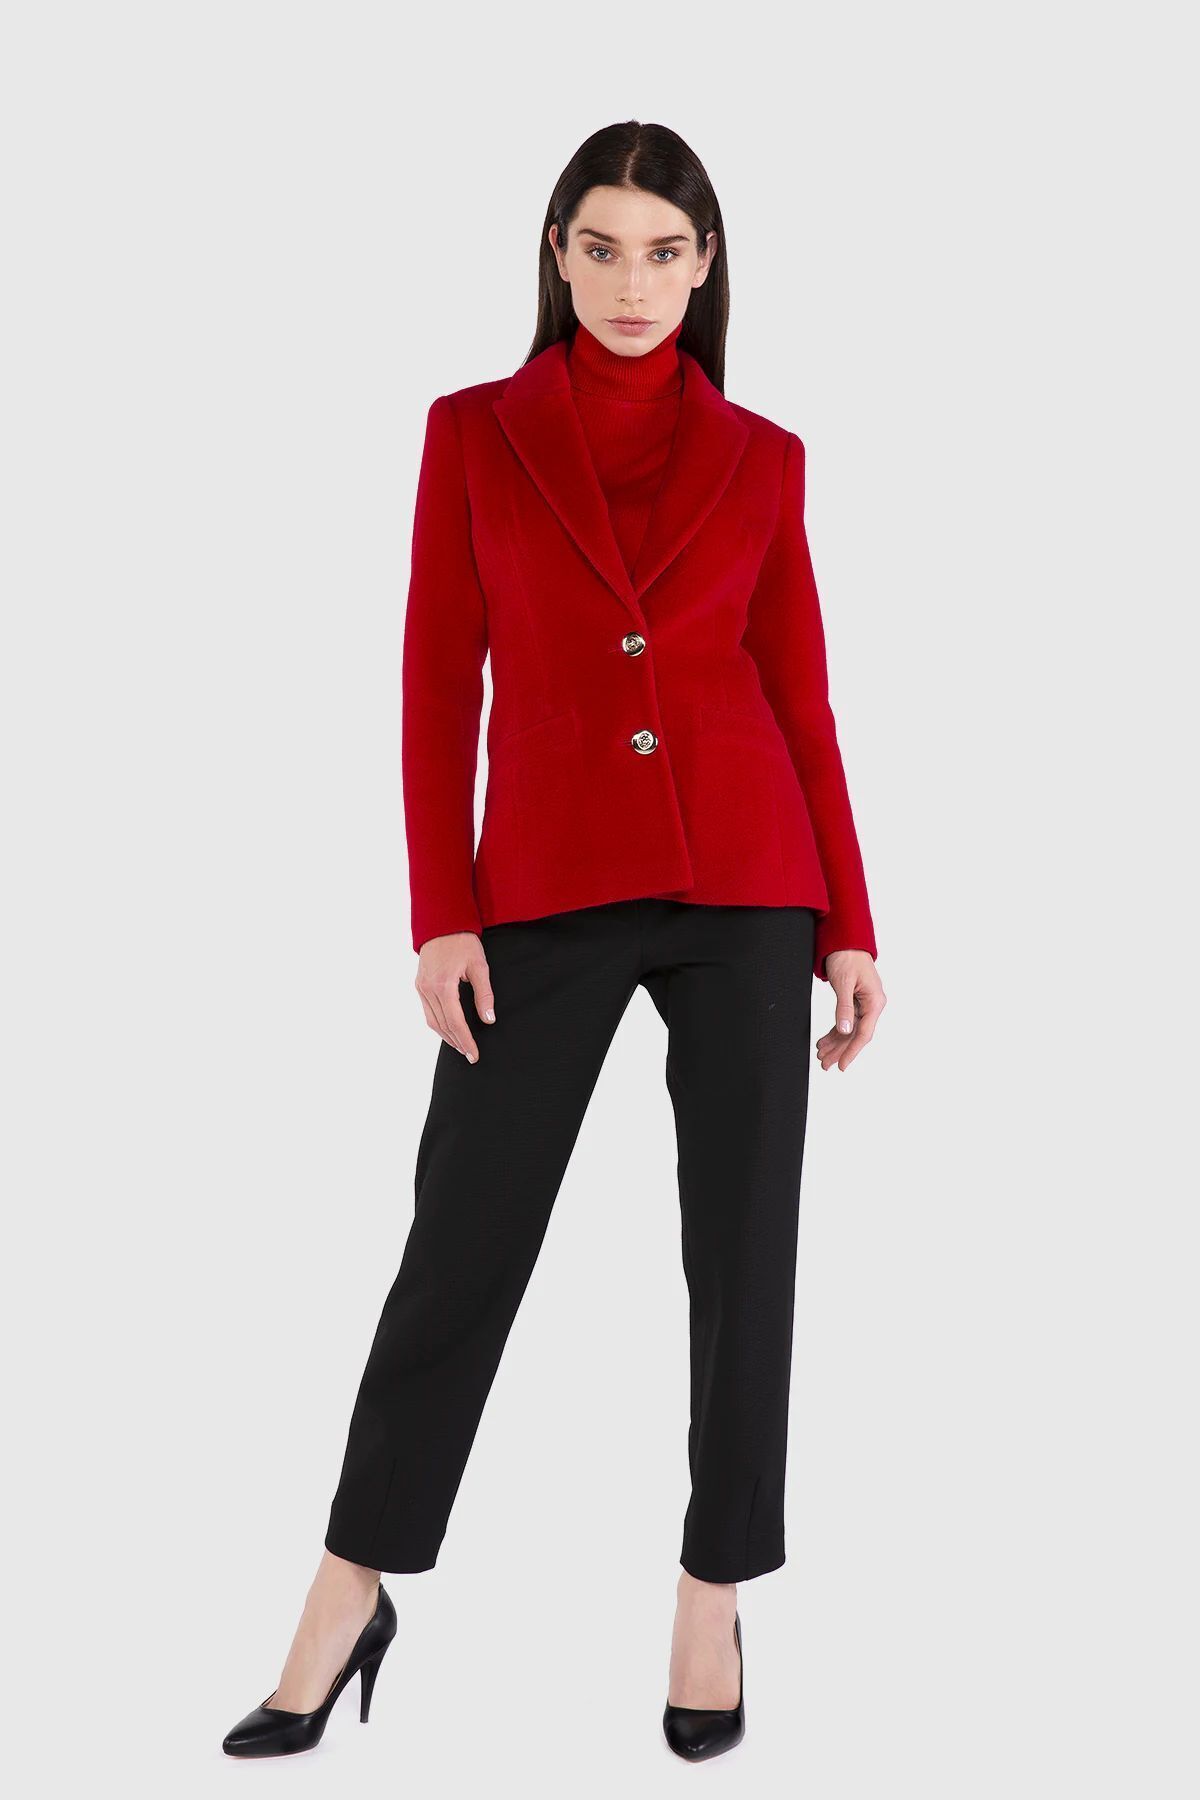 GIZIA Metal Düğmeli Kaşe Kumaş Blazer Kırmızı Ceket